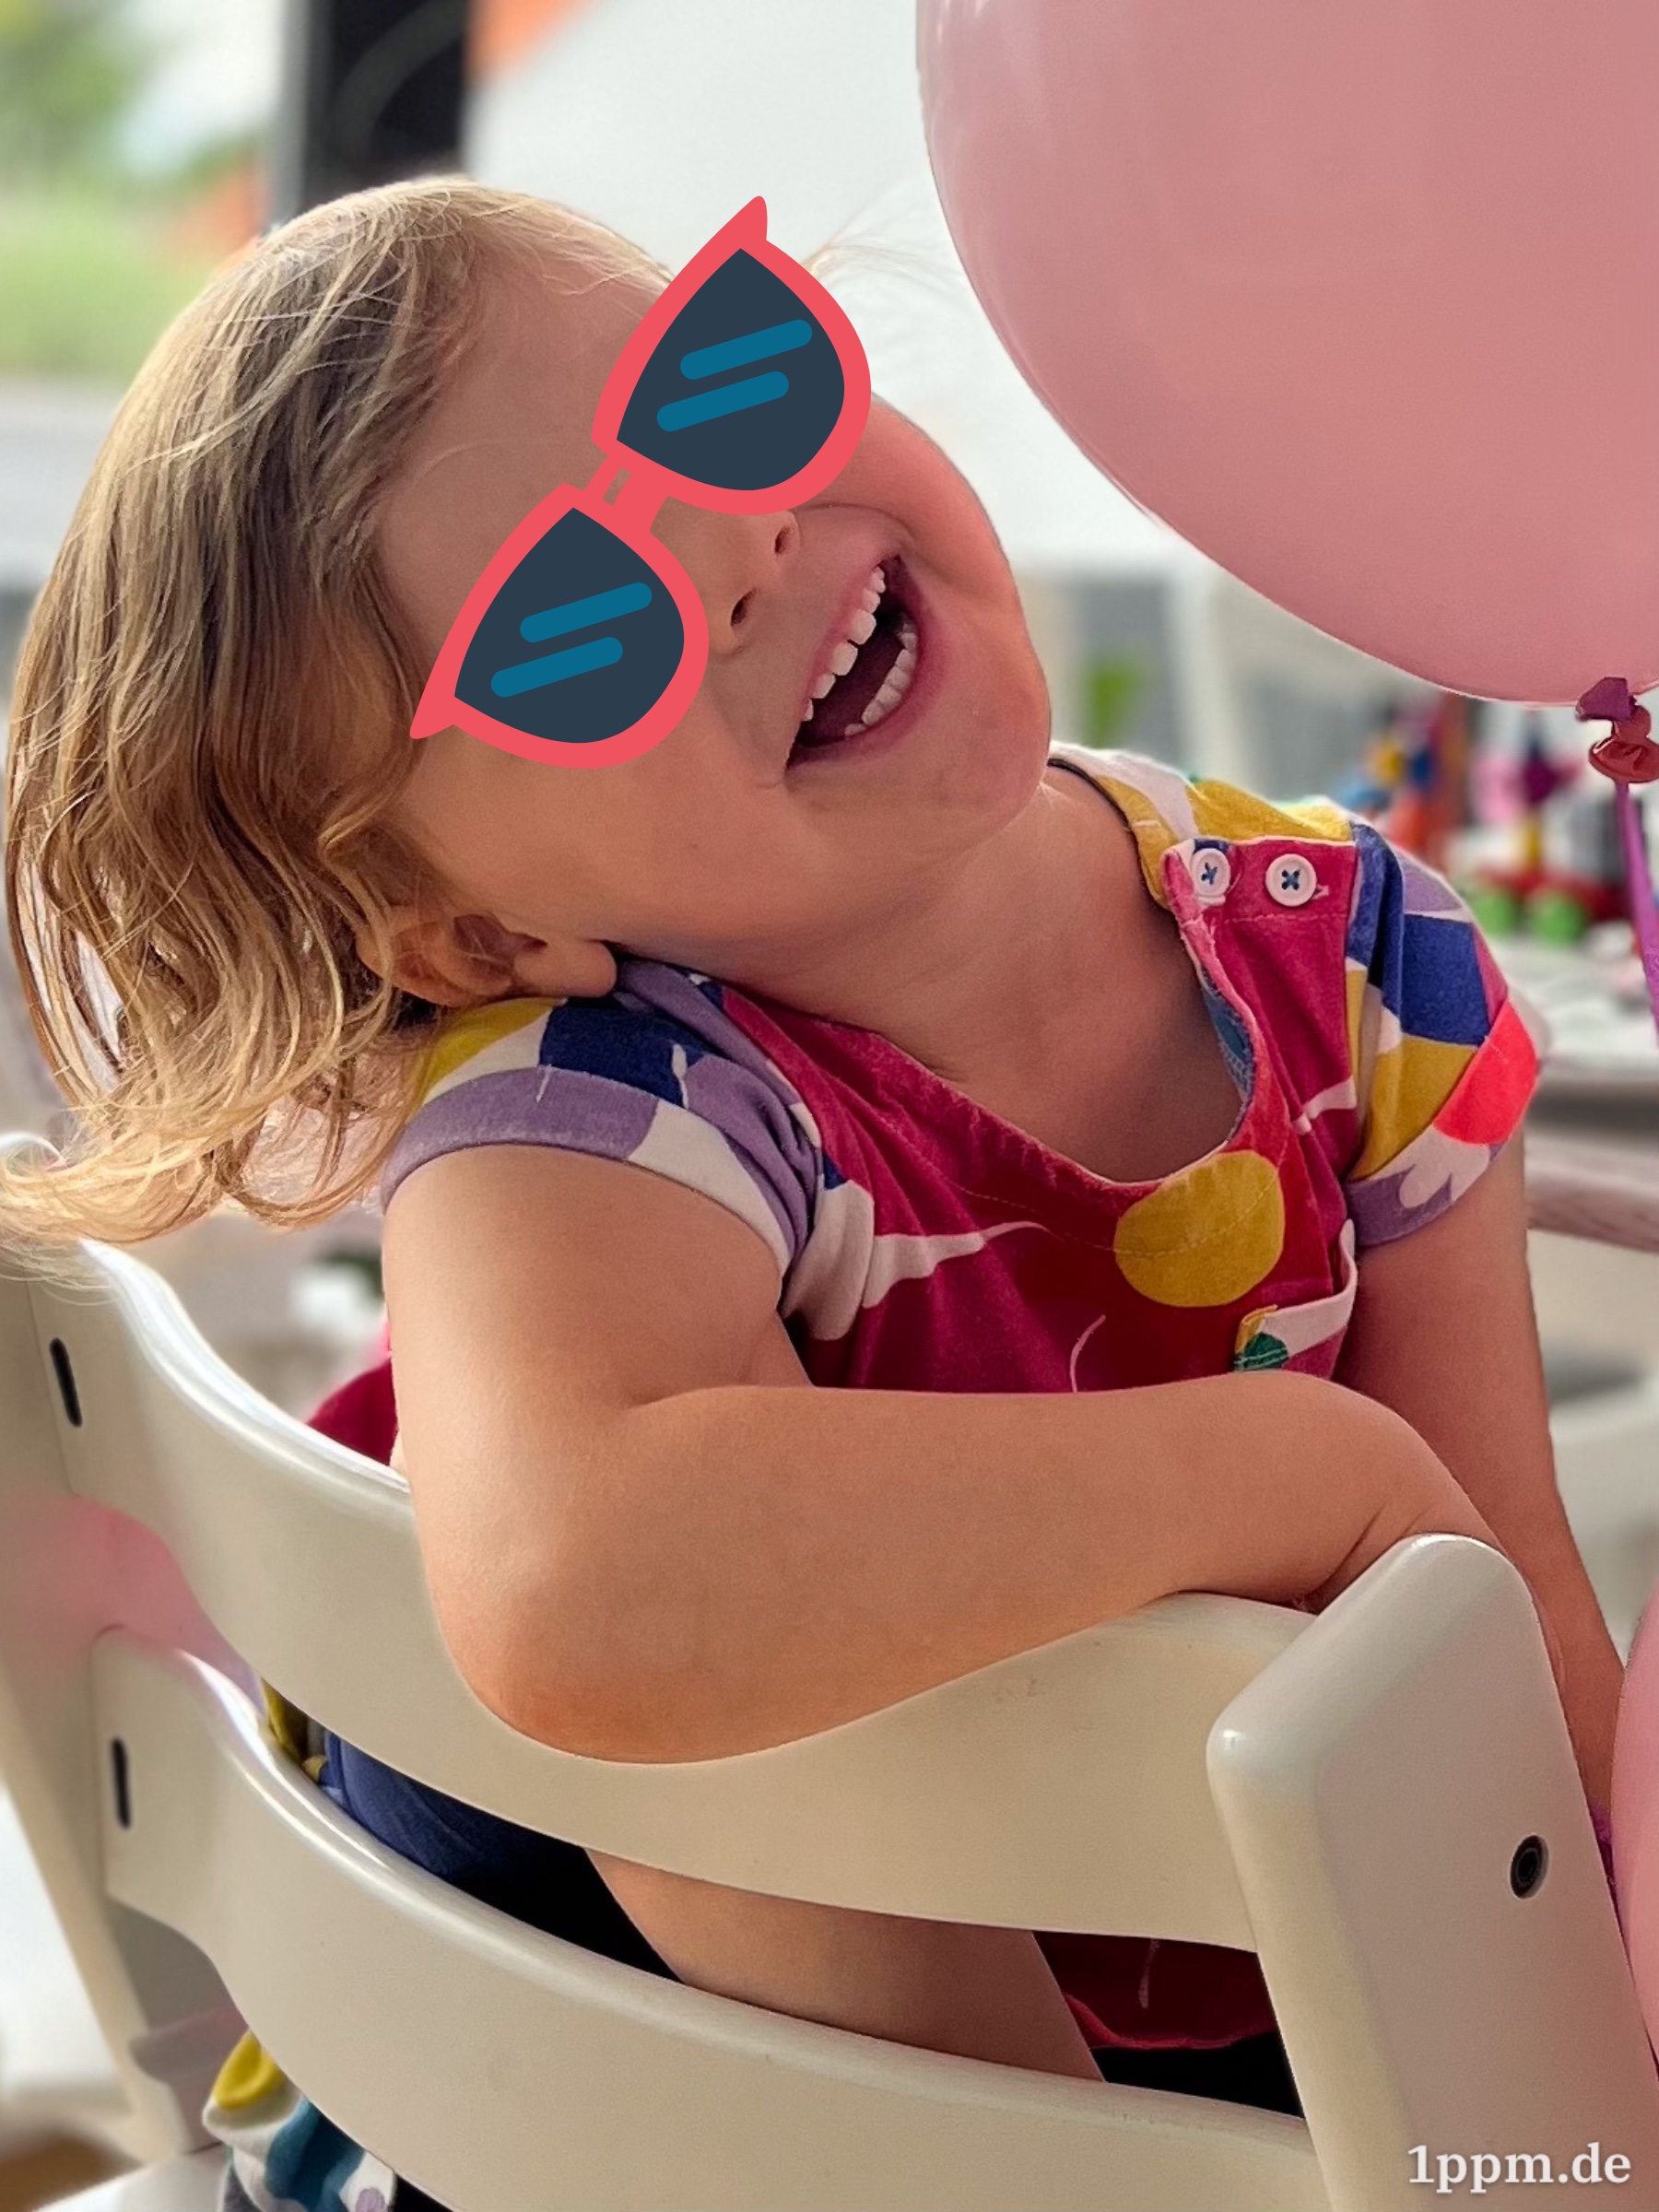 Ein Mädchen (mit retuschierter Sonnenbrille) hängt mit einem Arm über der Stuhllehne und lacht. Im Hintergrund ein rosafarbener Luftballon.